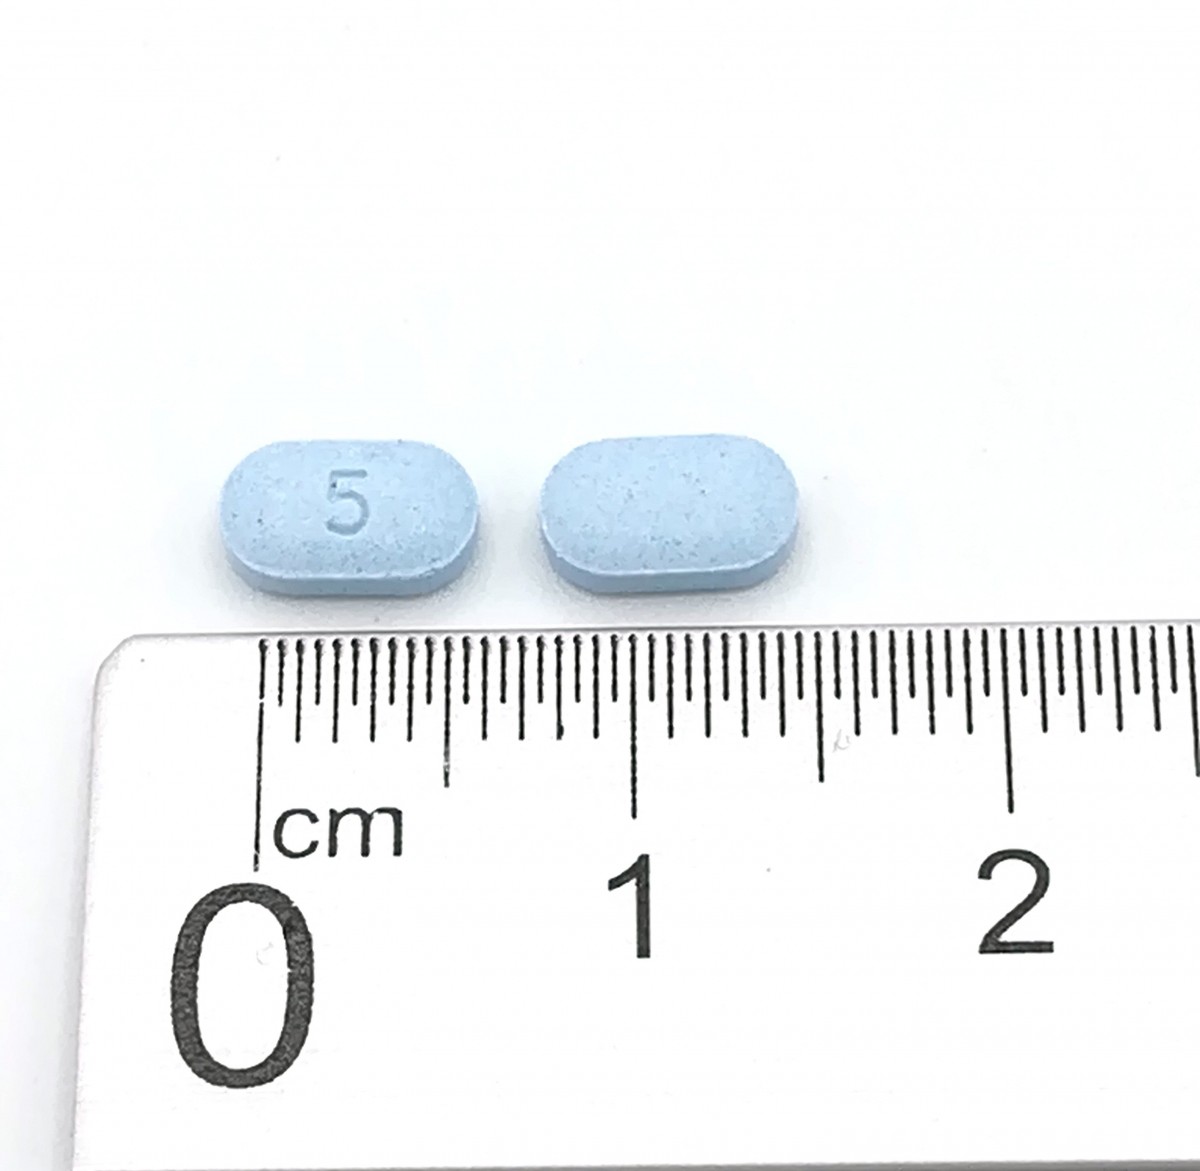 ARIPIPRAZOL NORMON 5 MG COMPRIMIDOS EFG , 28 comprimidos fotografía de la forma farmacéutica.